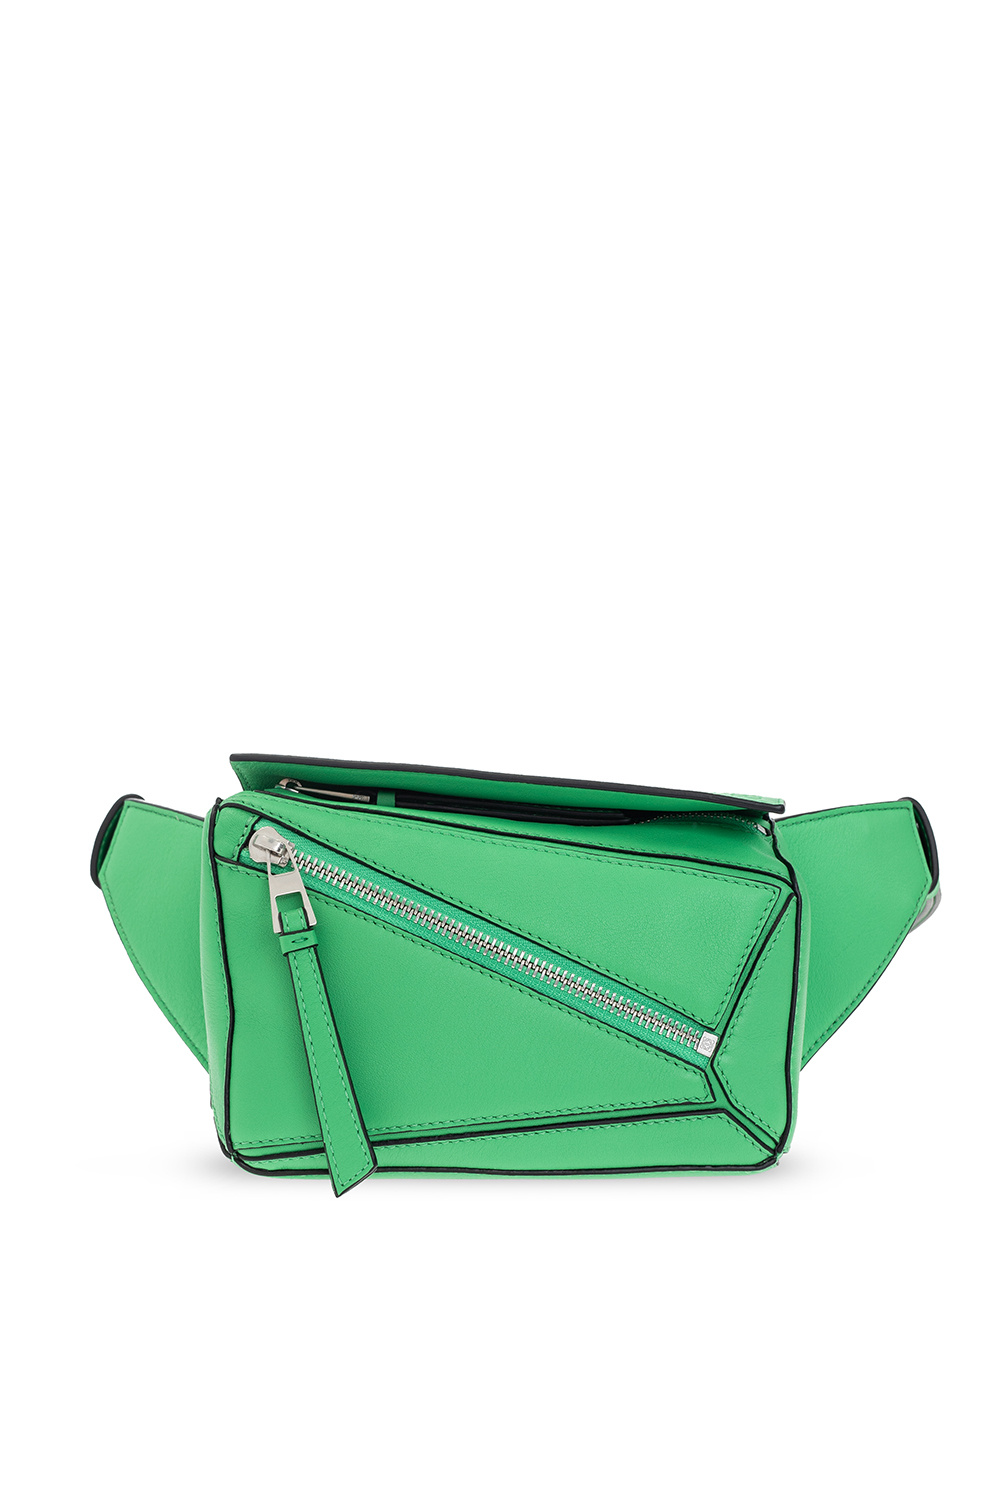 Loewe Green and Beige Puzzle Bag Loewe